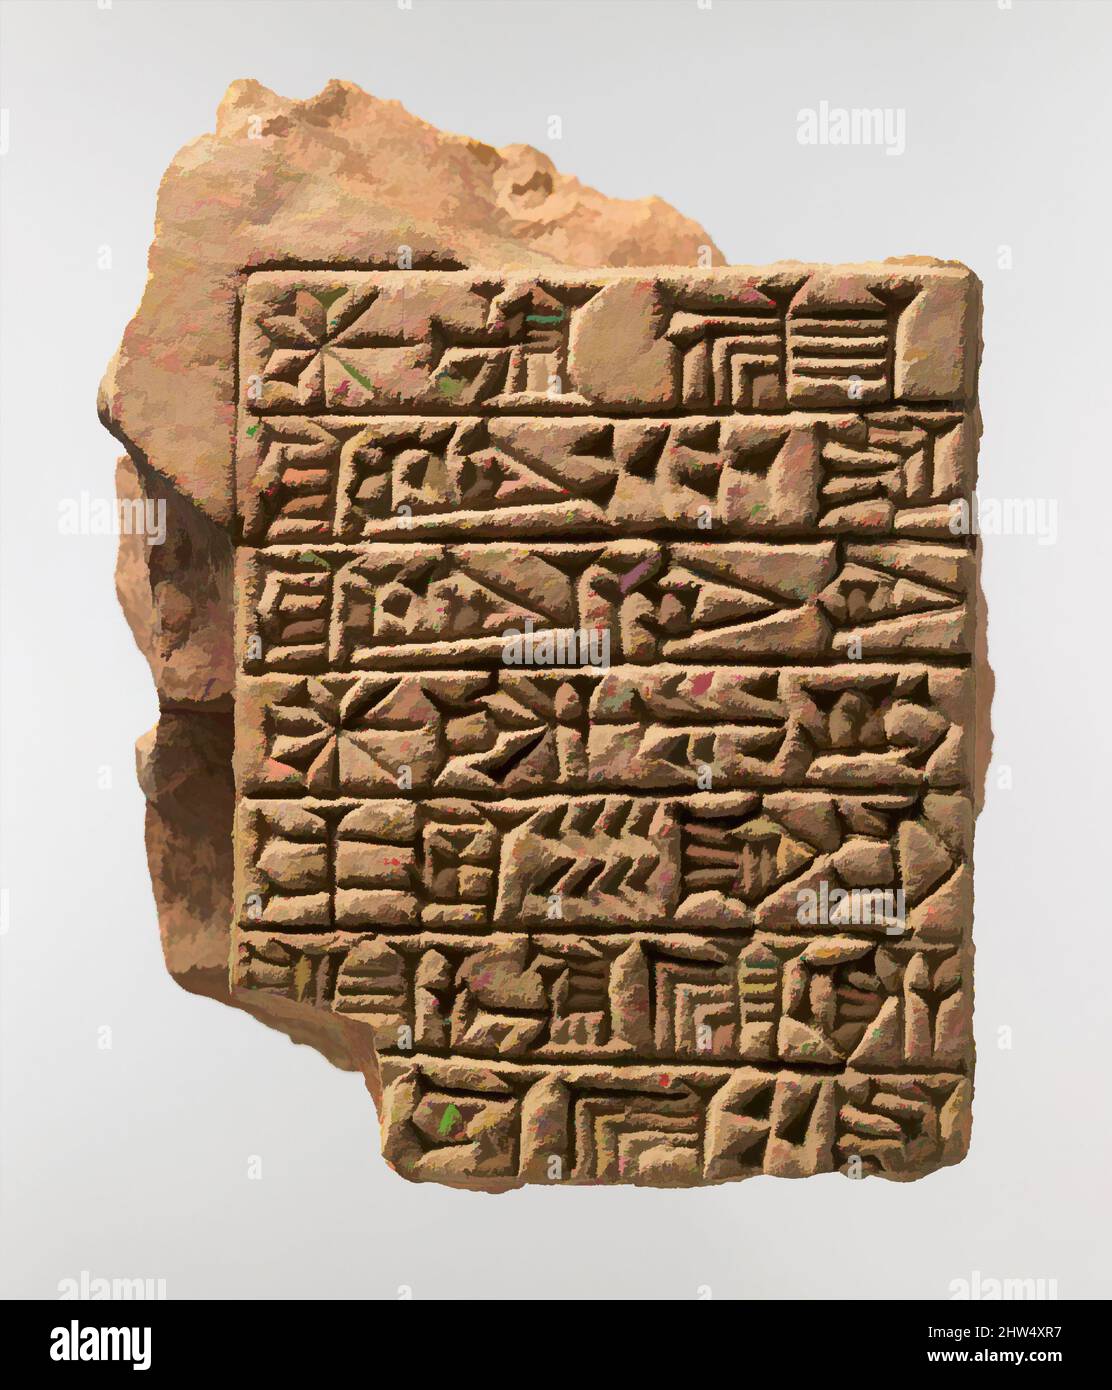 Kunst inspiriert von beschrifteten Ziegelsteinen: Widmungseinschrift von Adad-shuma-usur, Kassite, ca. 1216–1187 v. Chr., Mesopotamien, Nippur, Kassite, Keramik, Ziegel: 13,2 x 10,8 x 7,2 cm (5 1/4 x 4 1/4 x 2 7/8 in.), Keramik-Architektur-beschriftet, Wartung der Tempel und ihre Kulte war ein, Classic Works modernisiert von Artotop mit einem Schuss Moderne. Formen, Farbe und Wert, auffällige visuelle Wirkung auf Kunst. Emotionen durch Freiheit von Kunstwerken auf zeitgemäße Weise. Eine zeitlose Botschaft, die eine wild kreative neue Richtung verfolgt. Künstler, die sich dem digitalen Medium zuwenden und die Artotop NFT erschaffen Stockfoto